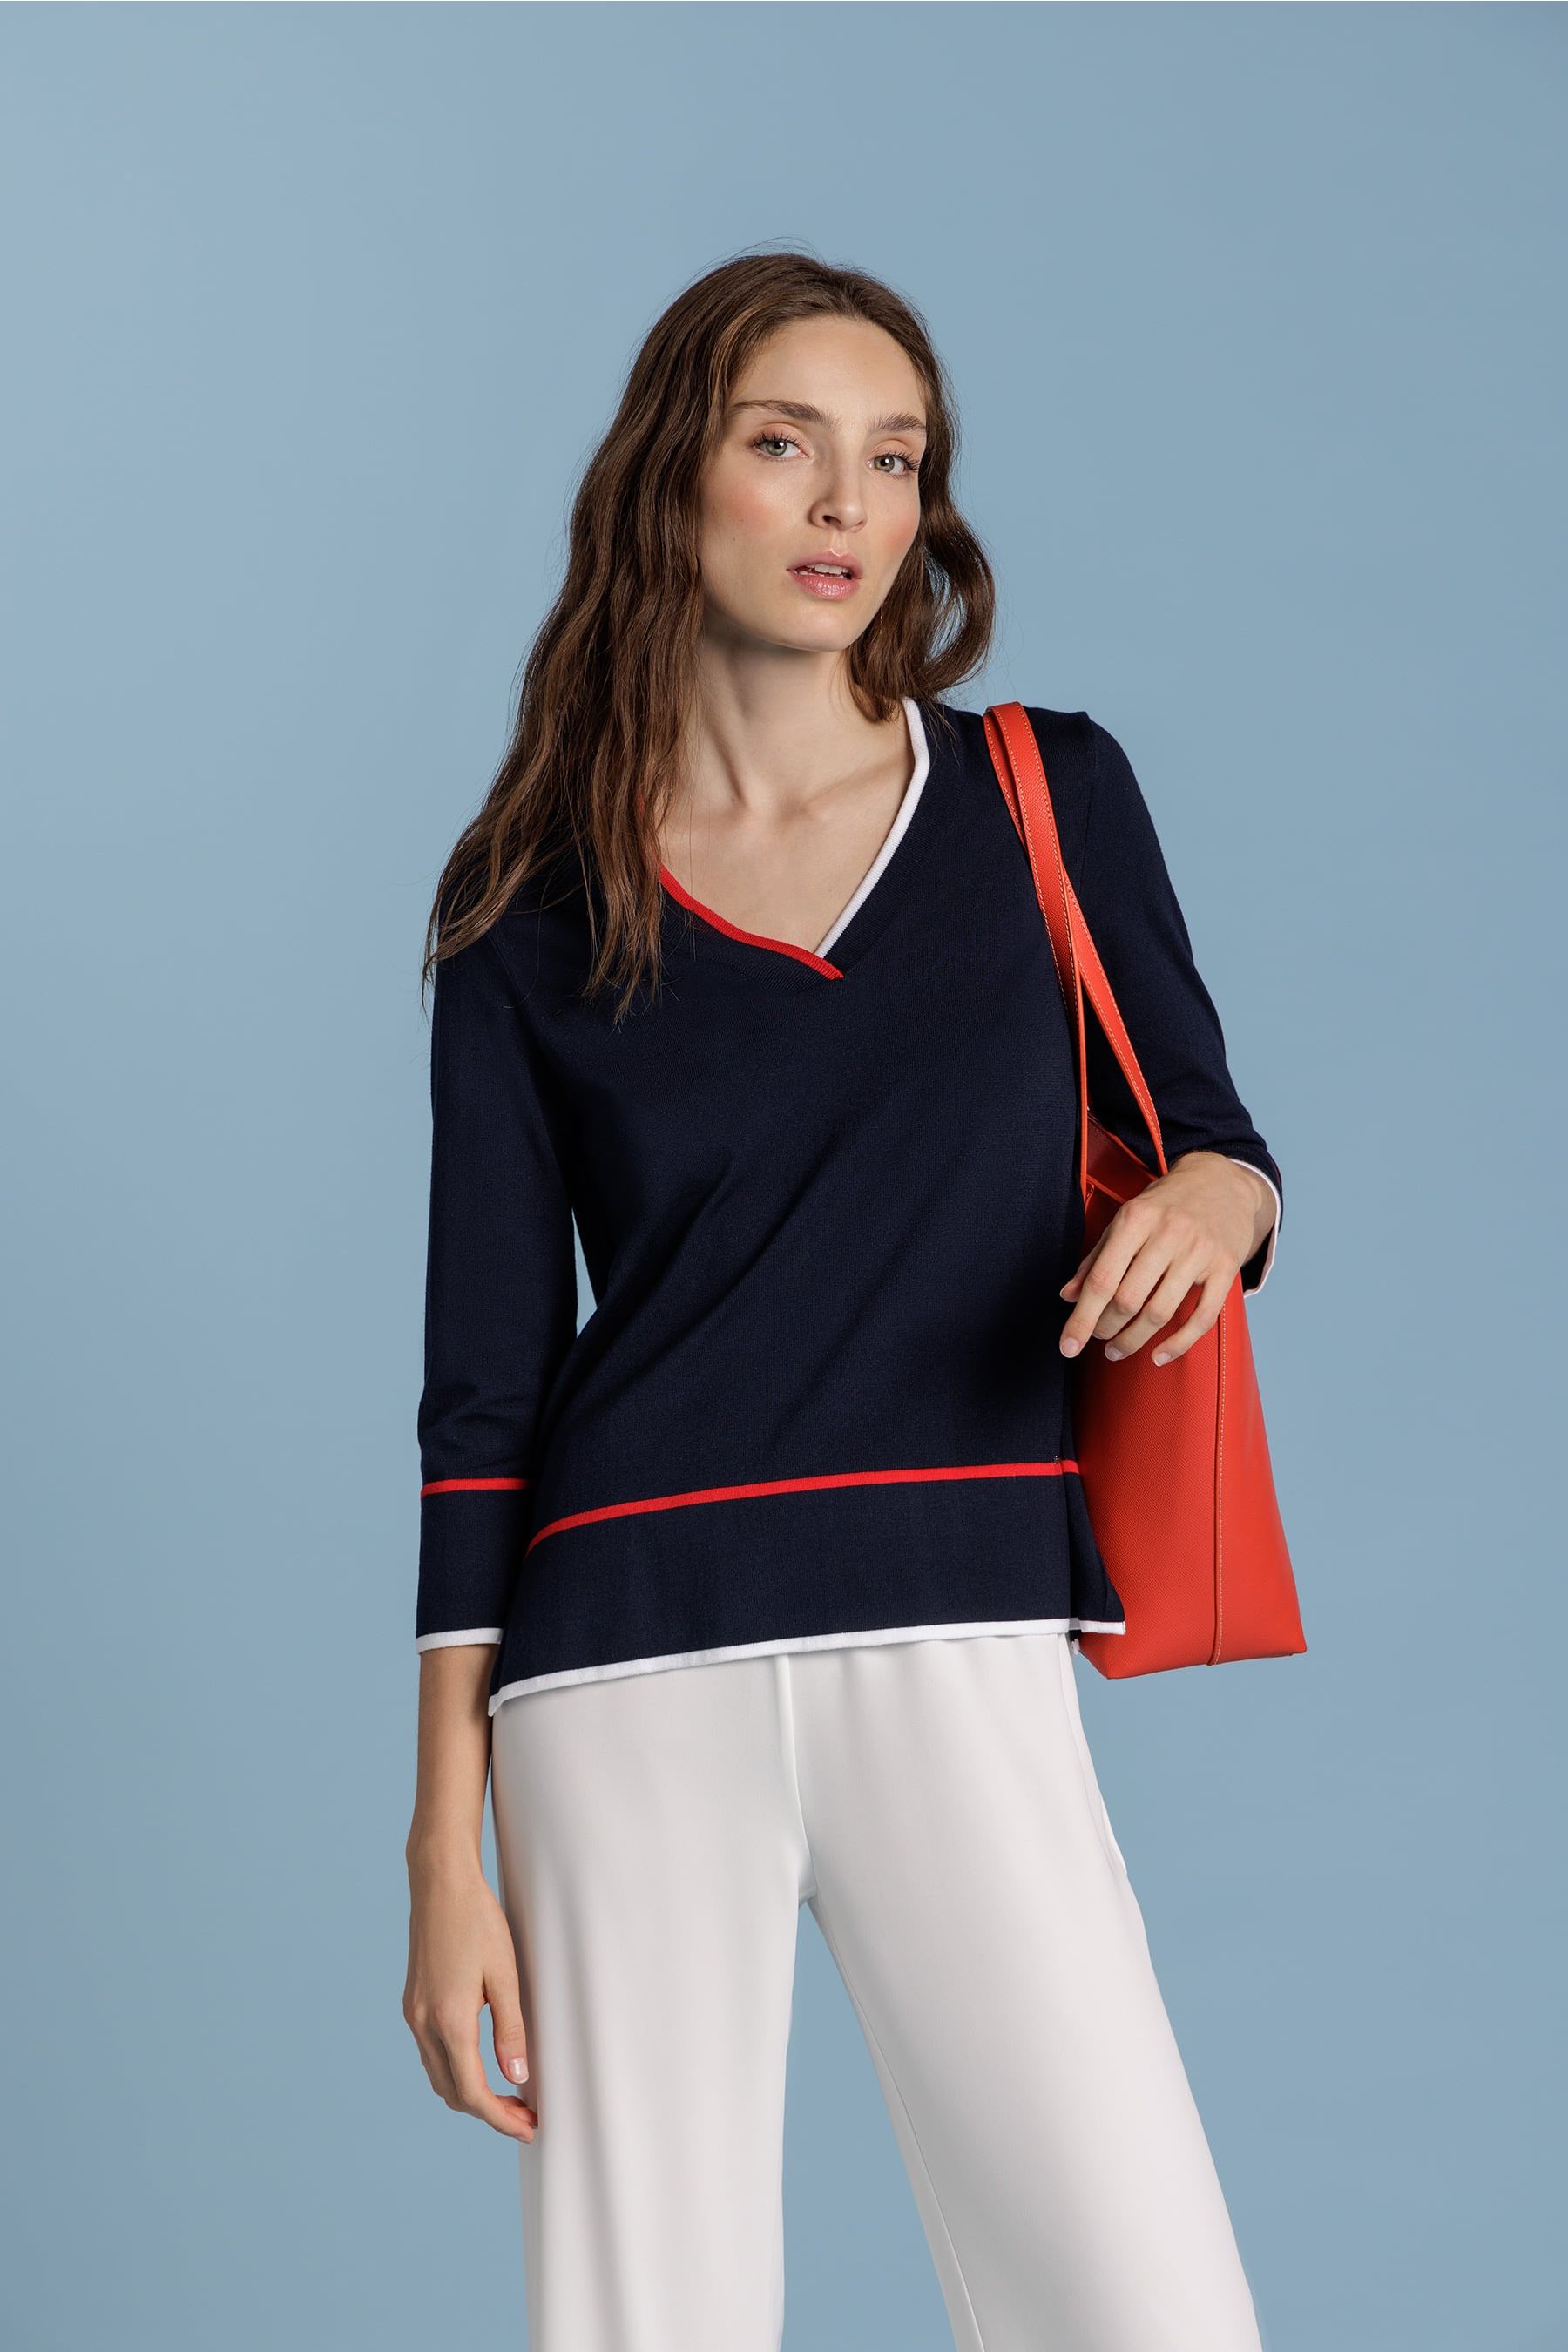 suéter azul navy con toques rojos y blancos